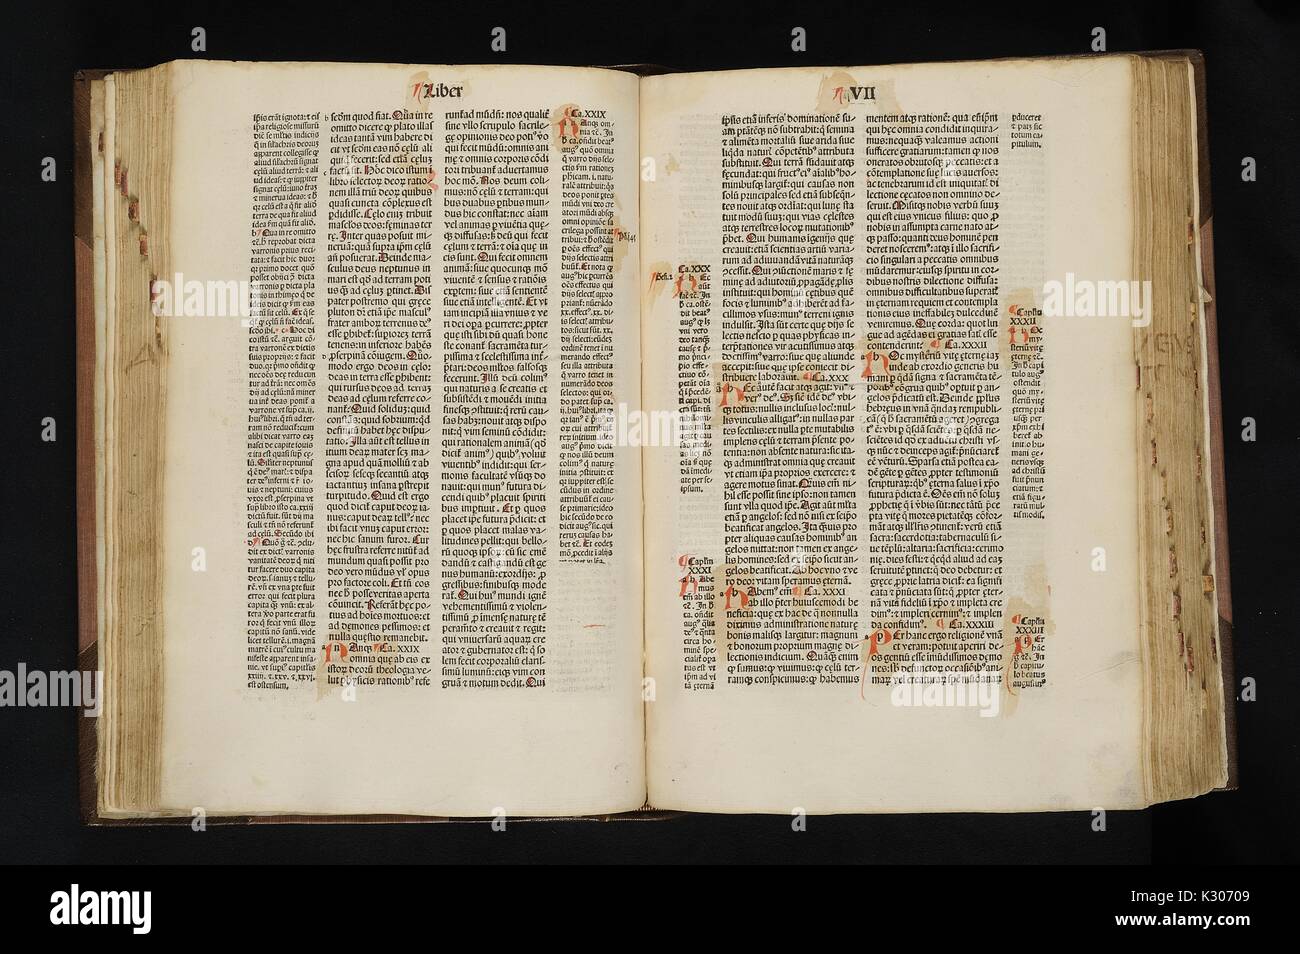 Beleuchtete Manuskriptseiten ab 1475 Buch der christlichen Philosophie in Lateinamerika von Augustinus von Hippo geschrieben in Venedig von Nicolaus Jenson, 1475 veröffentlicht. Stockfoto